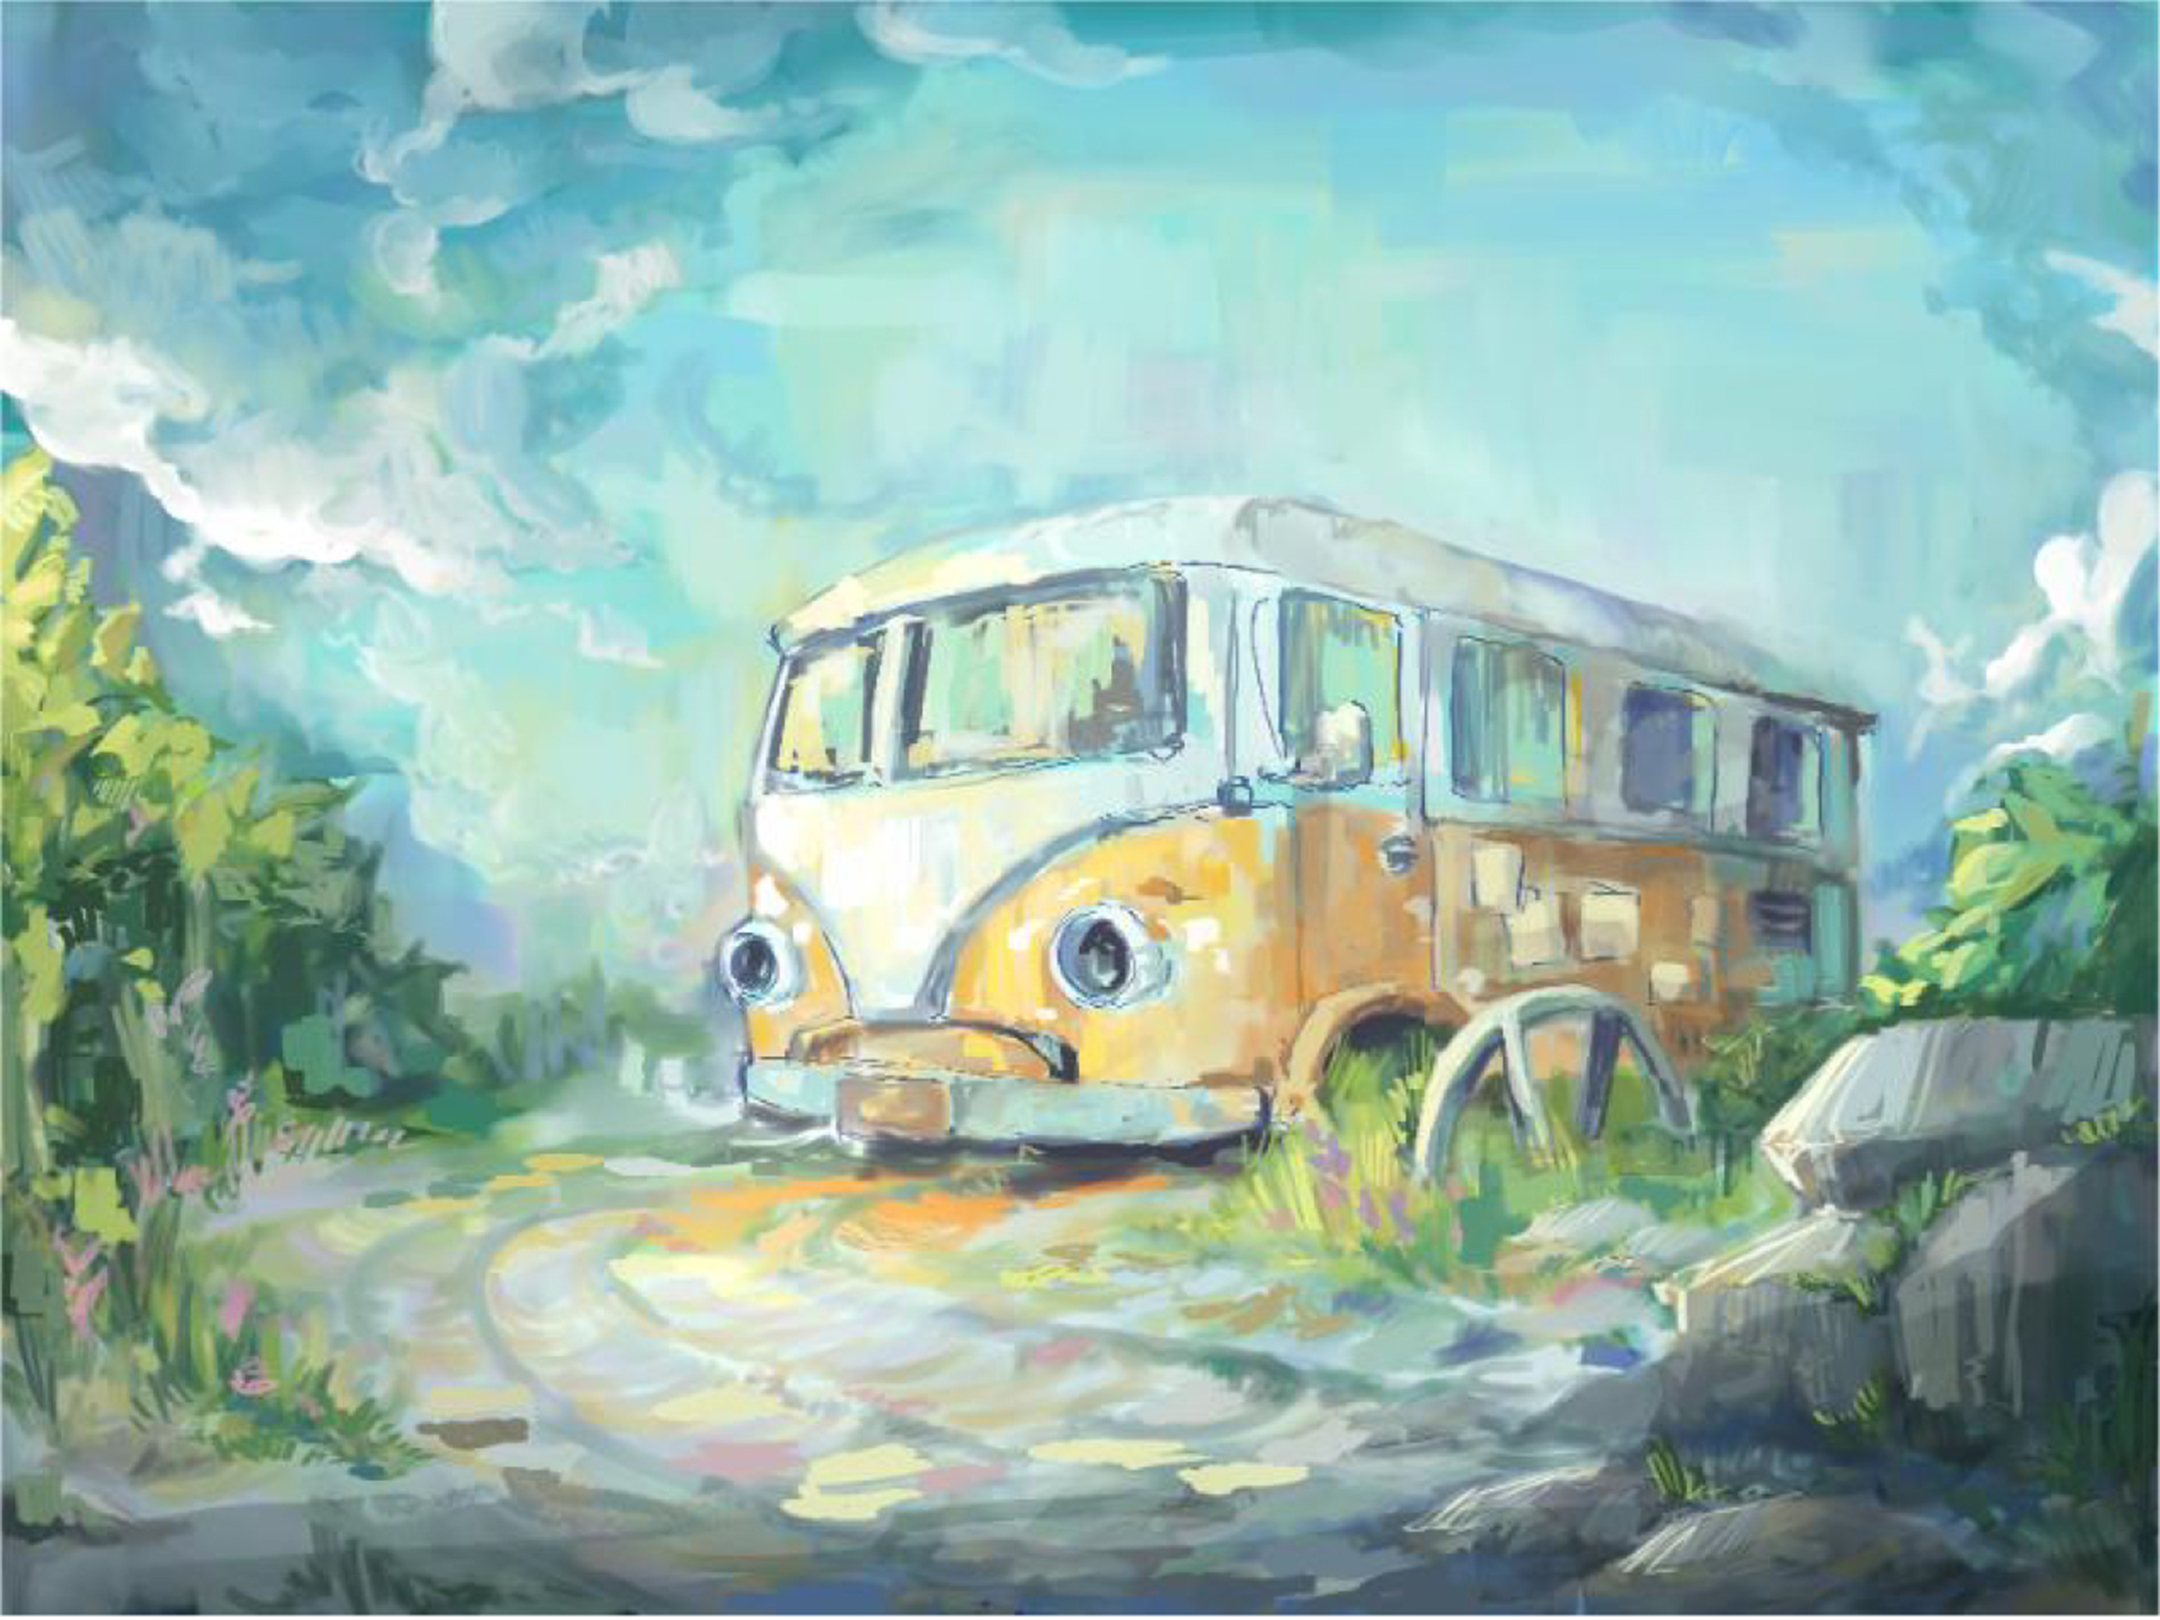 digital illustration of a broken-down Volkswagen bus